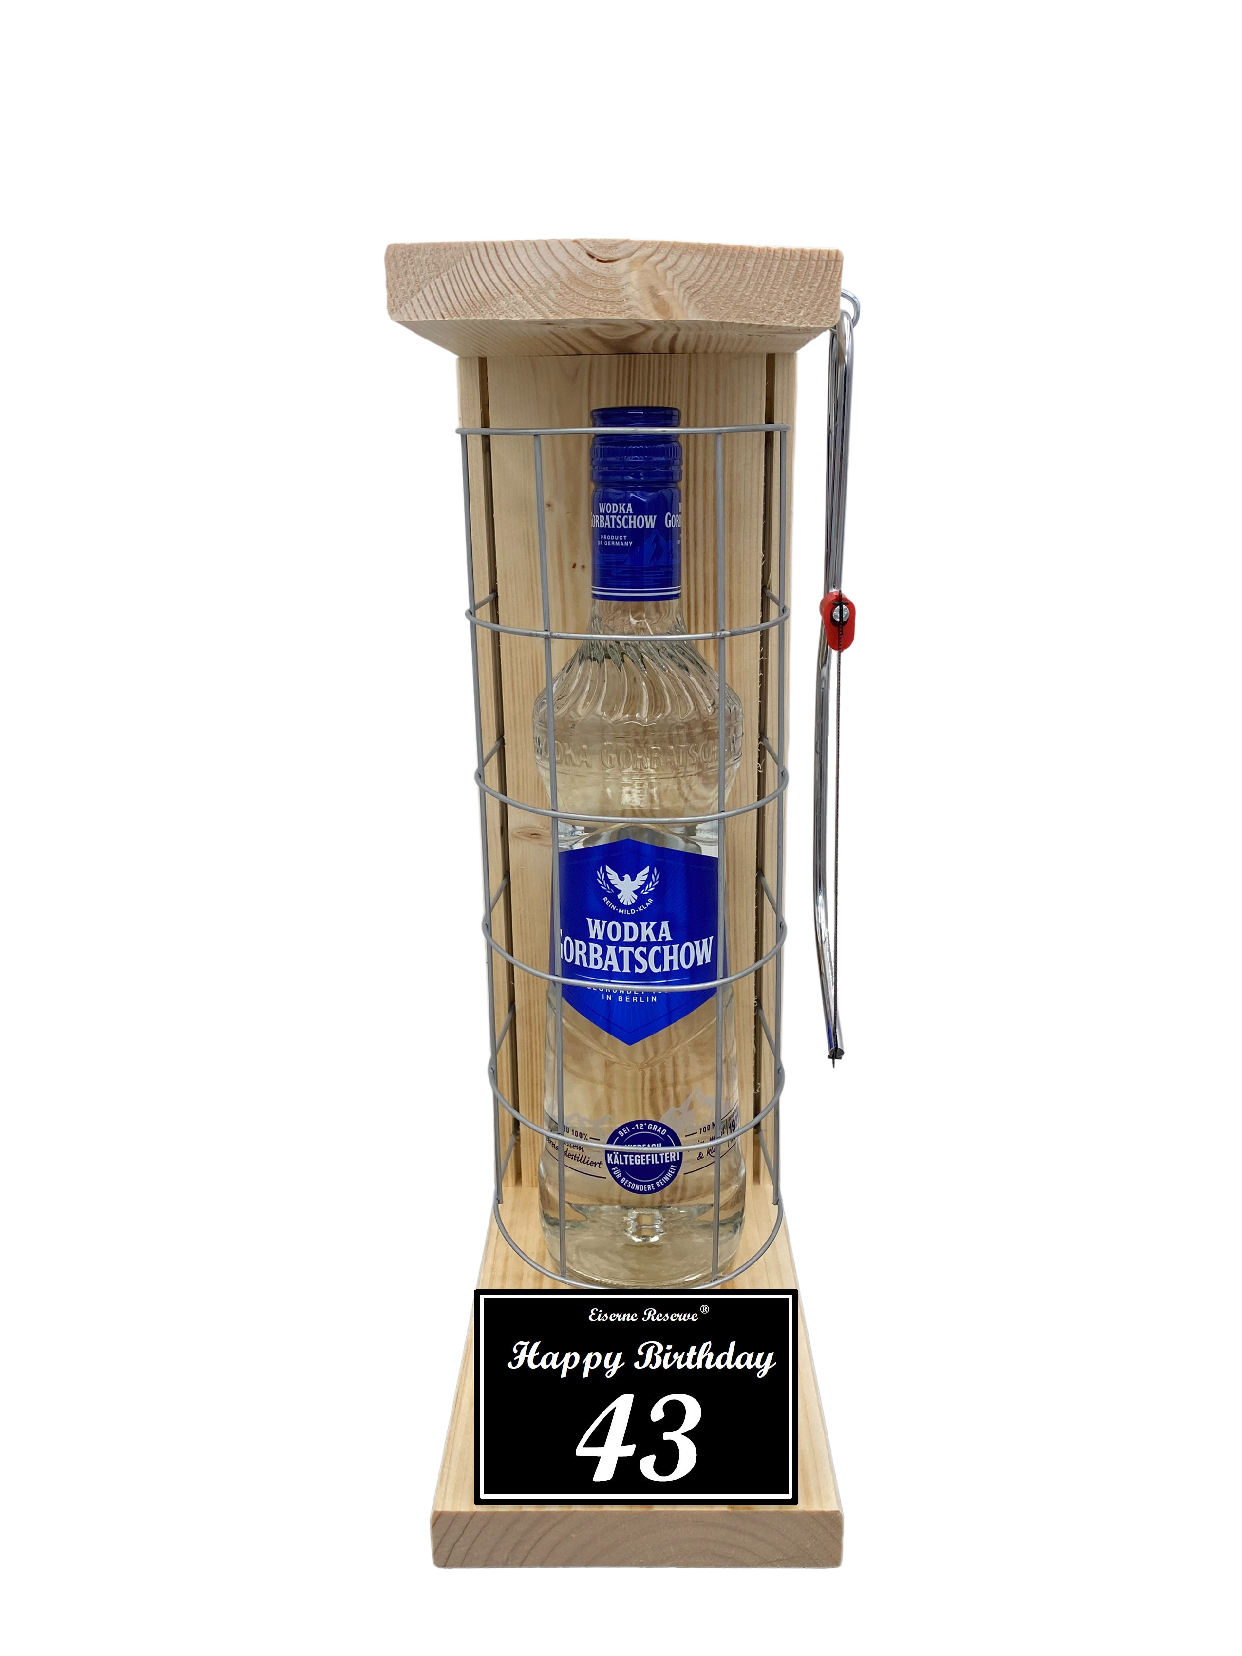 Wodka Geschenk zum 43 Geburtstag - Eiserne Reserve Gitterkäfig